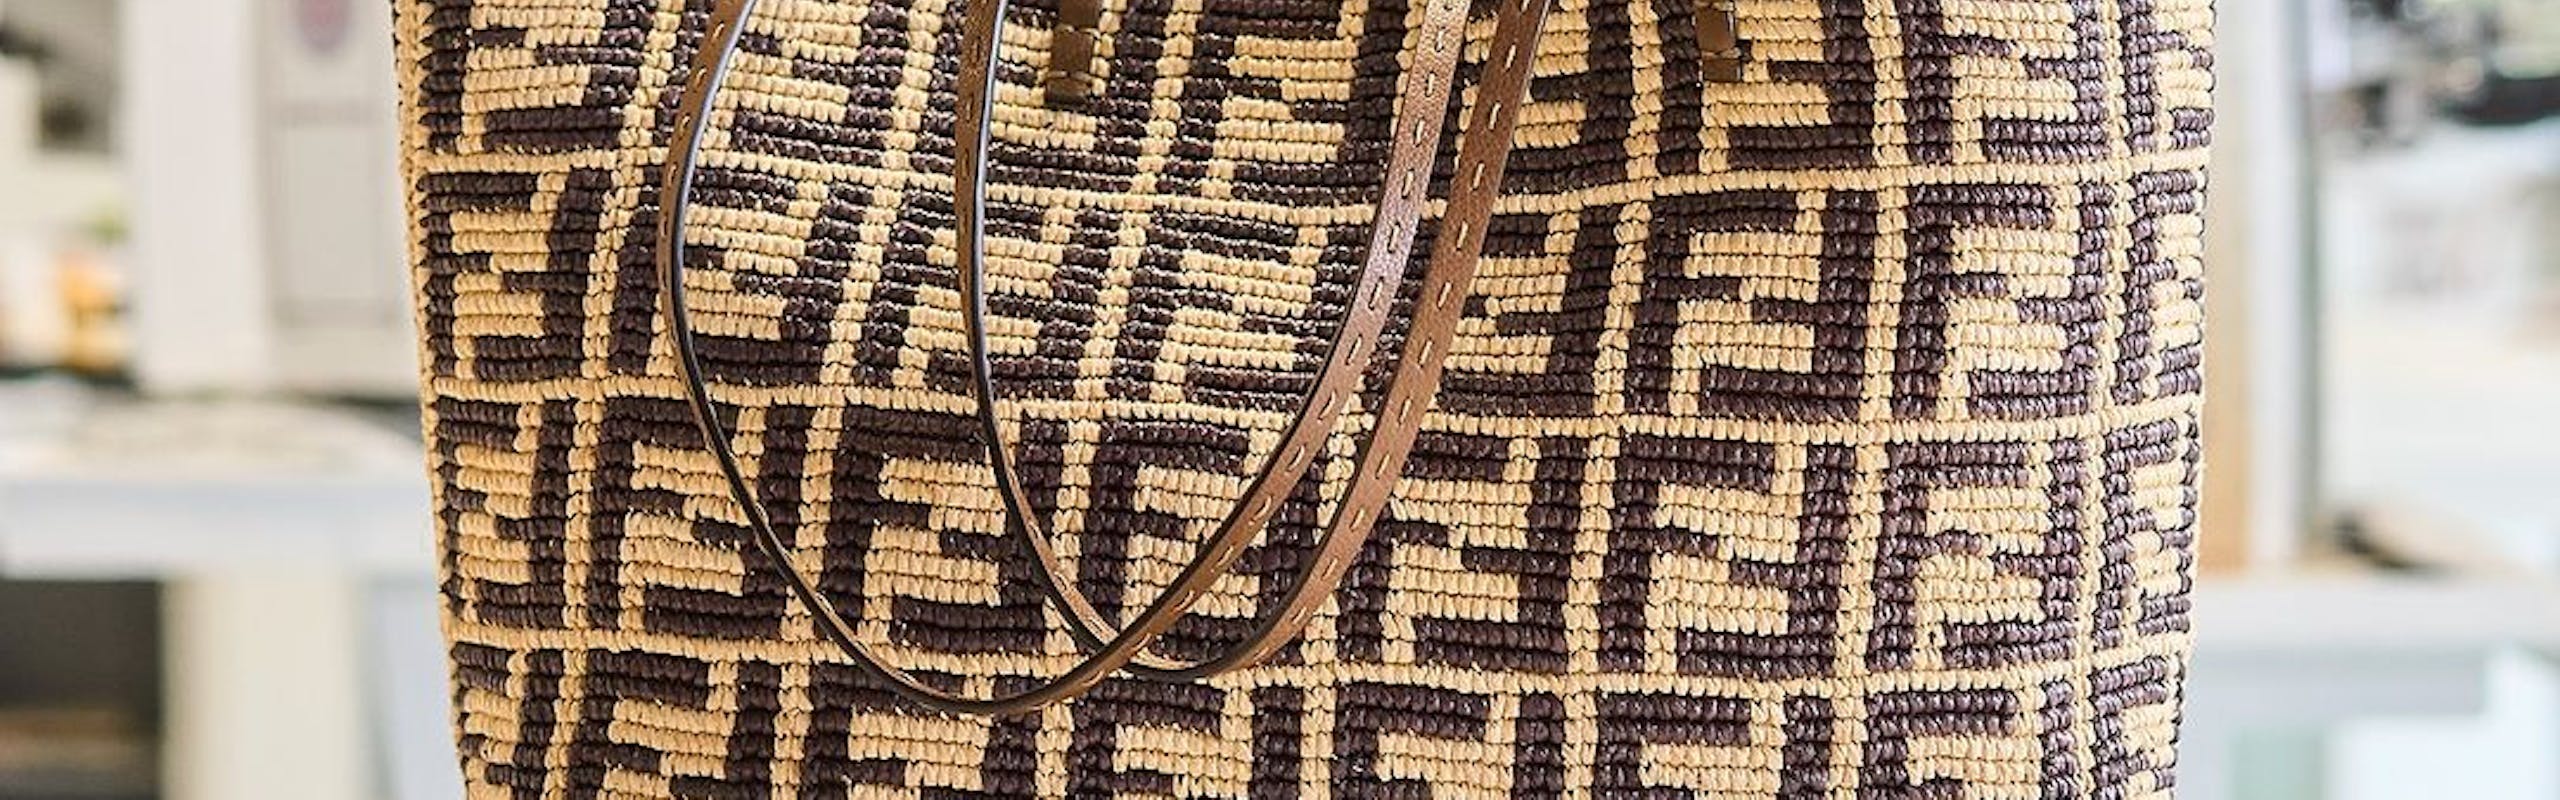 La Roll Bag di Fendi realizzata in collaborazione con Made For A Woman